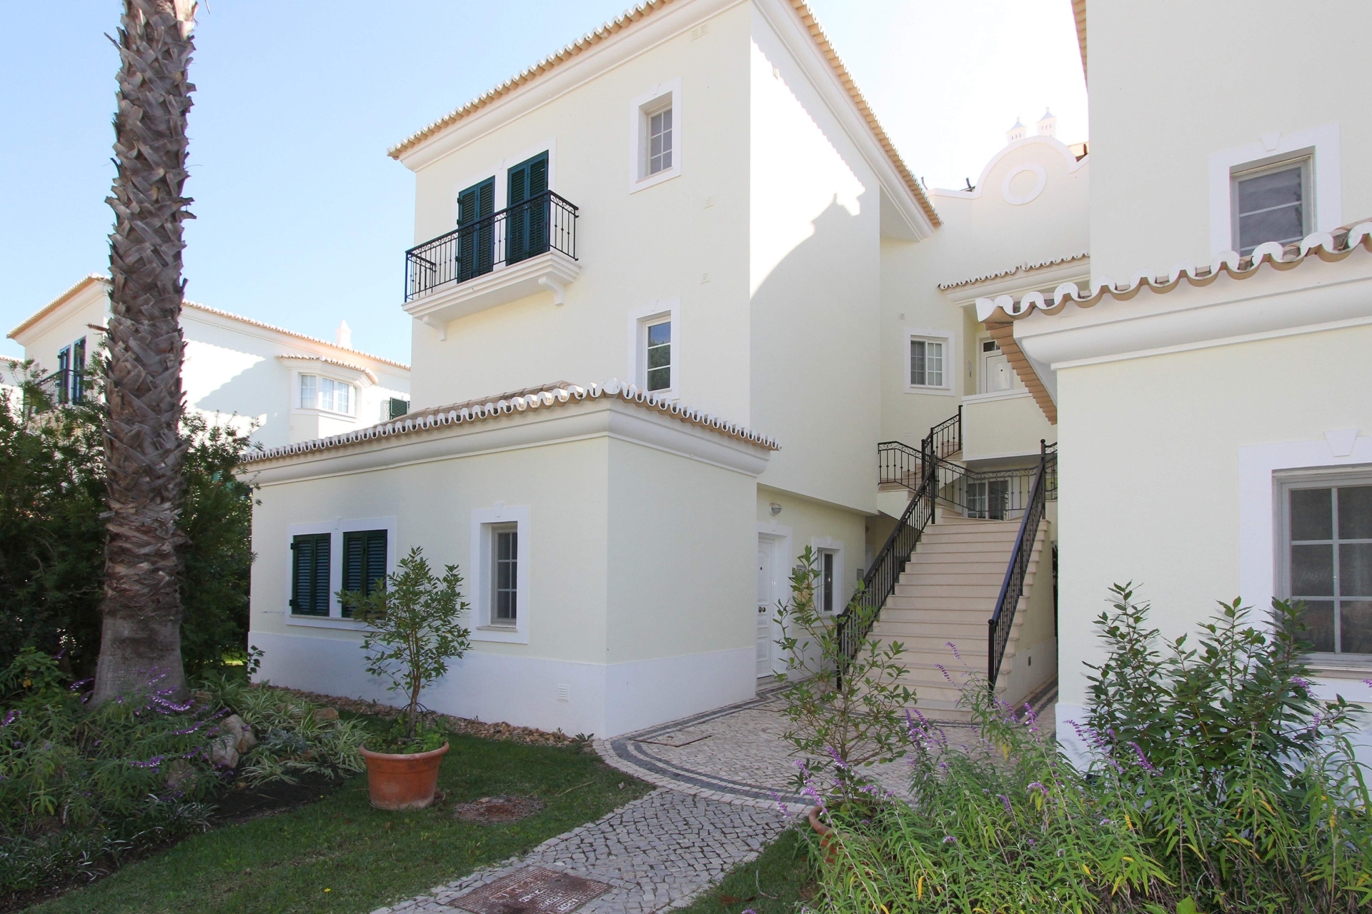 Apartamento en venta, cerca de playa, Vale do Lobo, Algarve, Portugal_120388